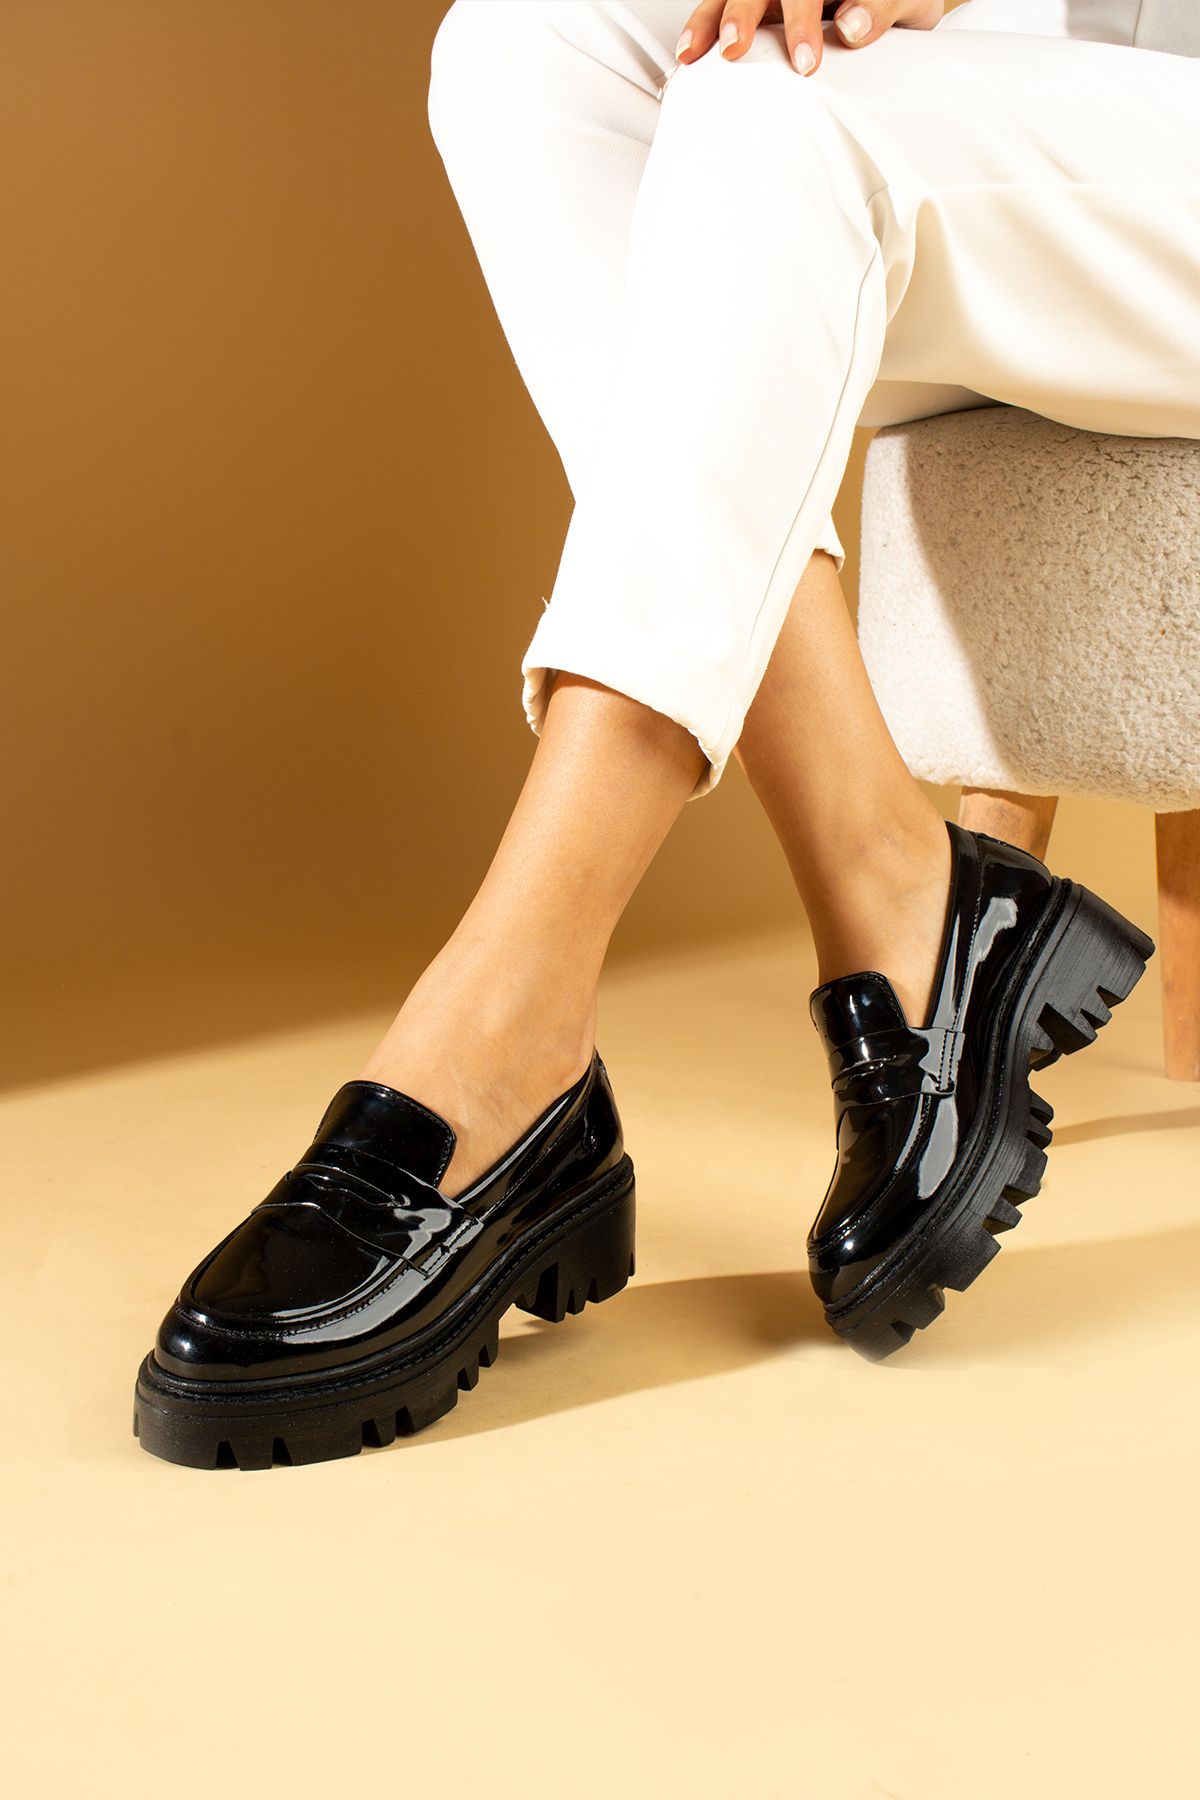 Pembe Potin Kadın Siyah Rugan Loafer Makosen Casual Tokalı Günlük Rahat Taban Ayakkabı